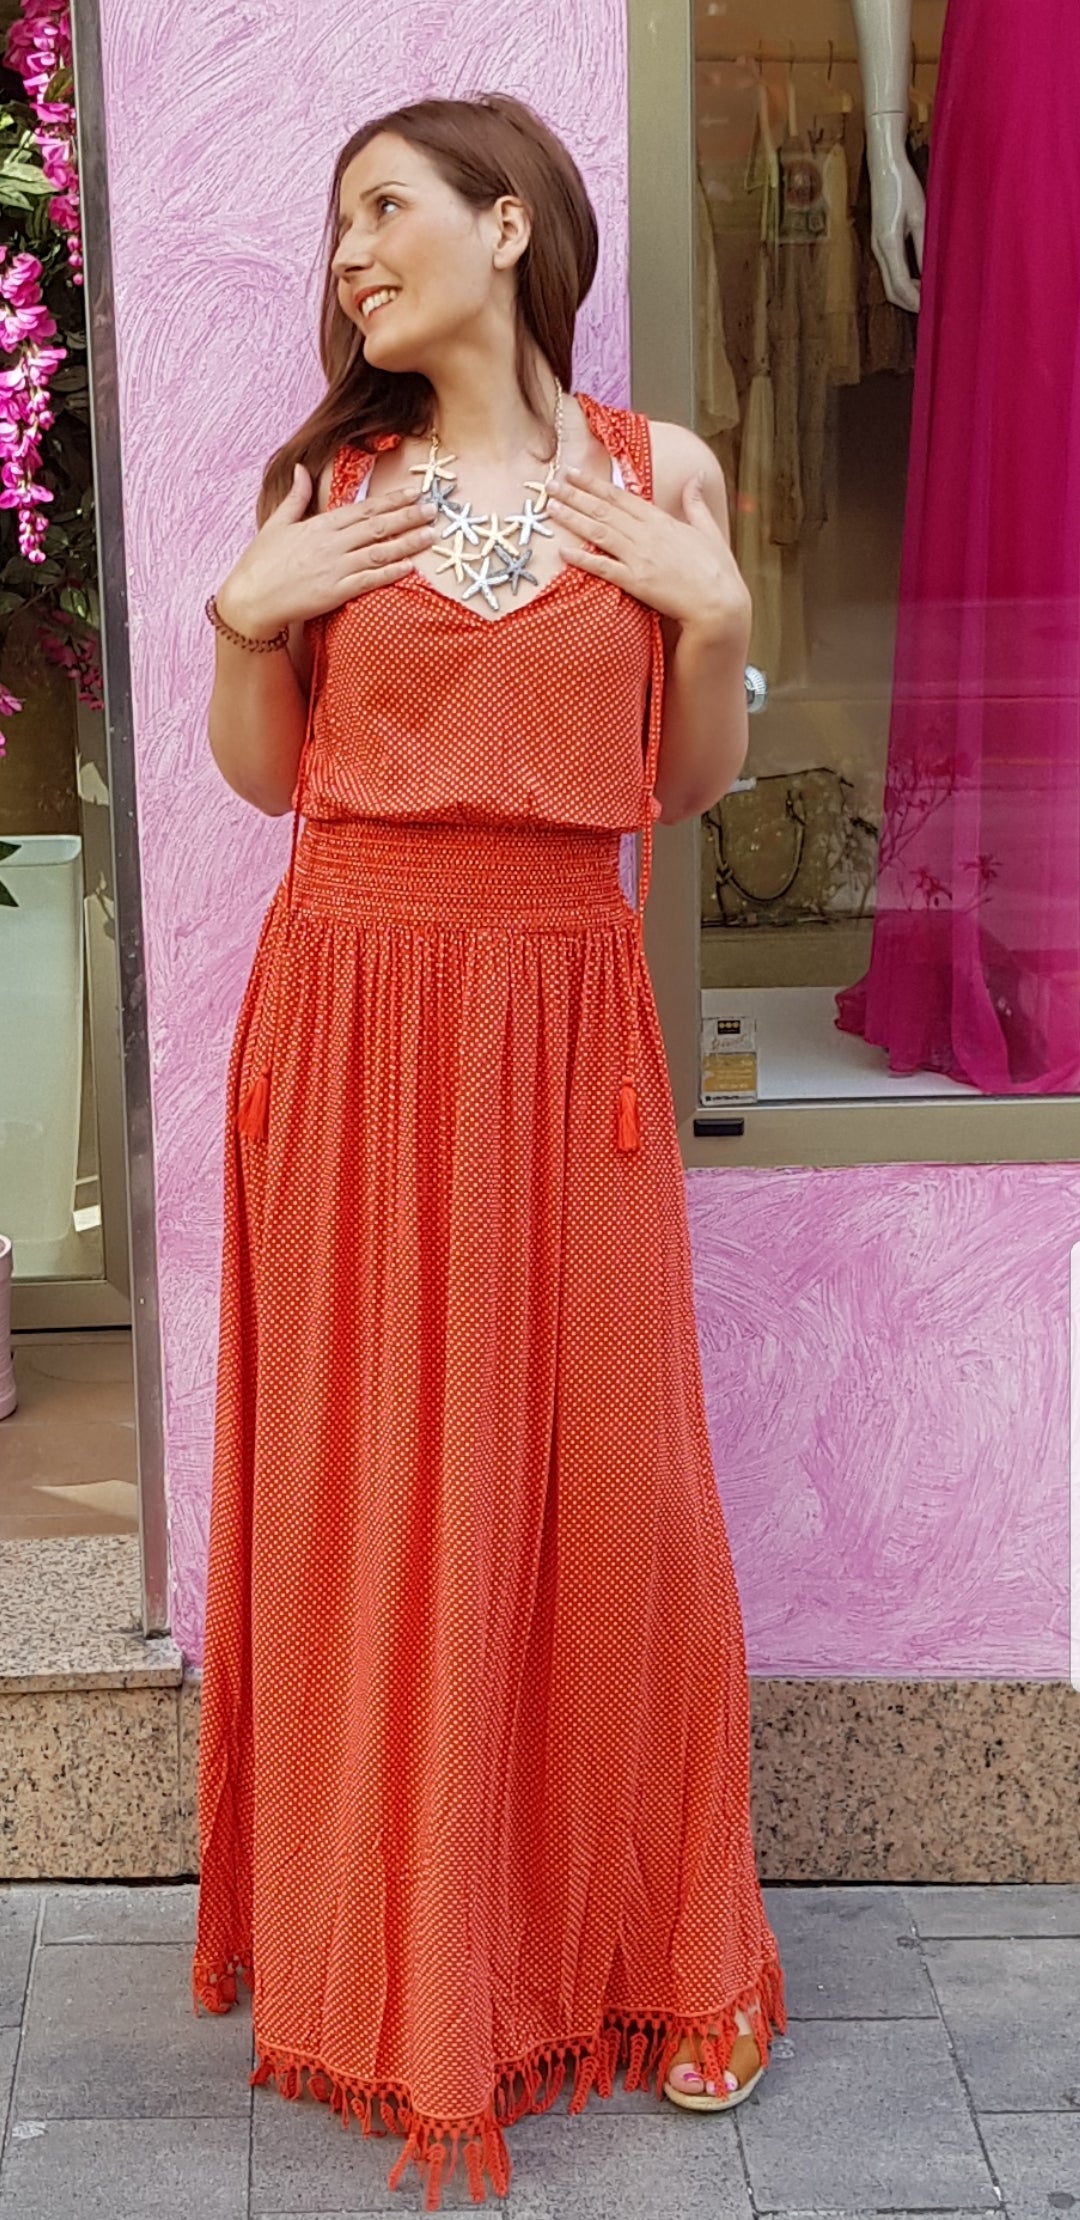 Vestido Orange Molly Bracken - Cloe Boutique